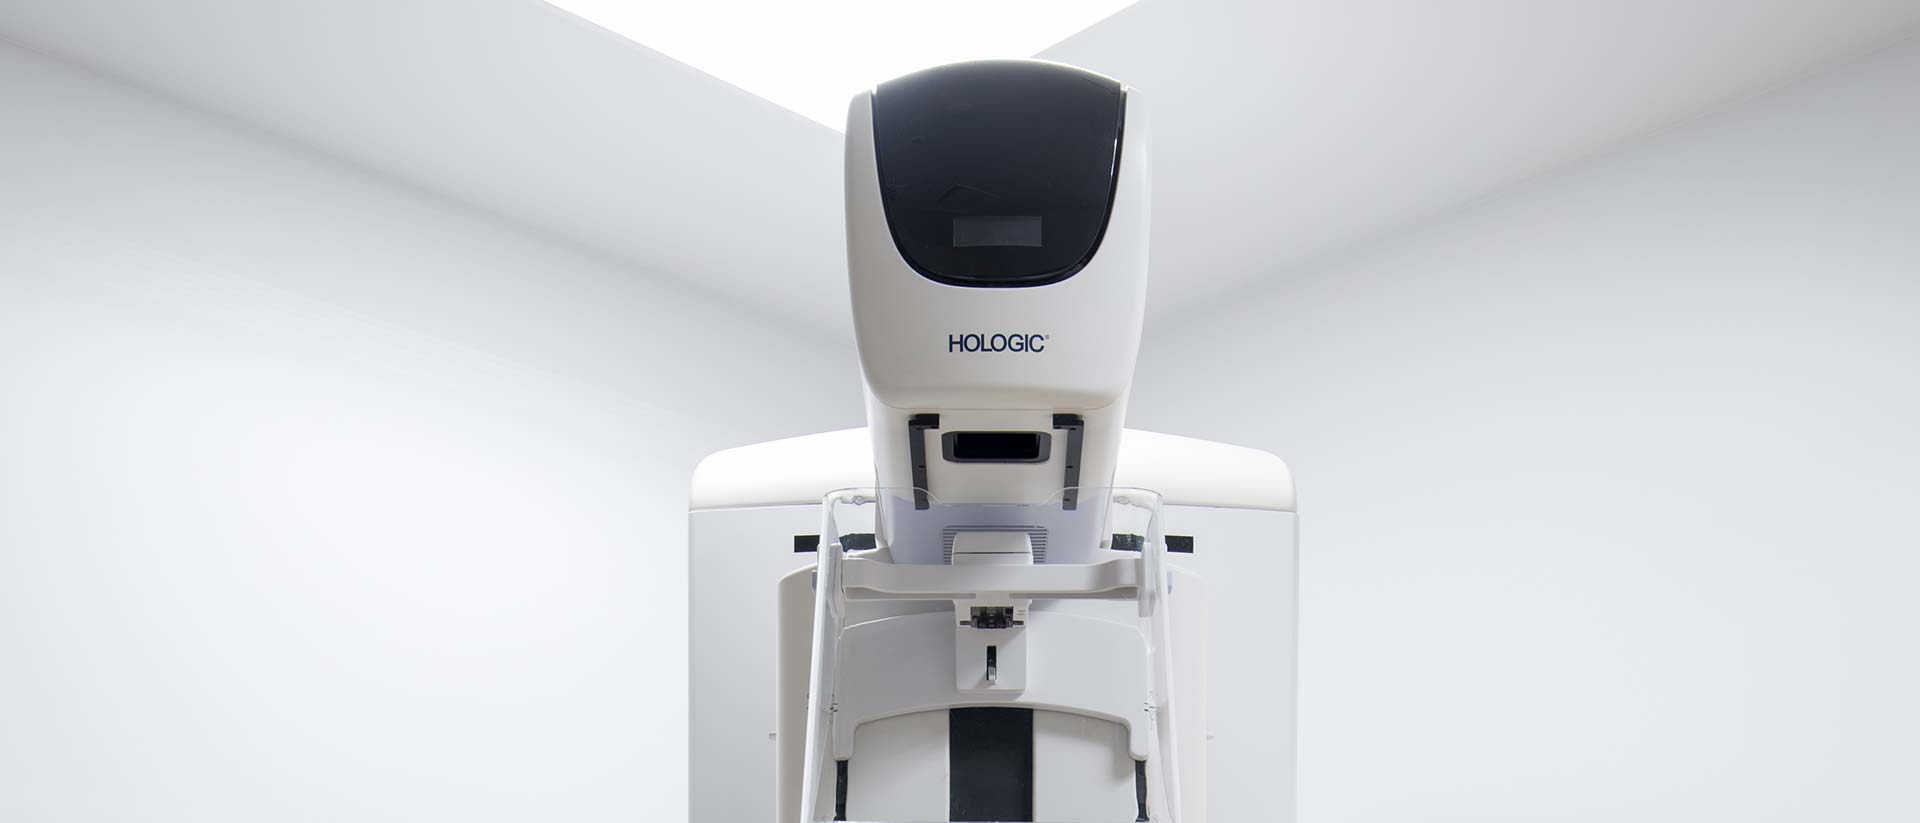 3D mammography technology